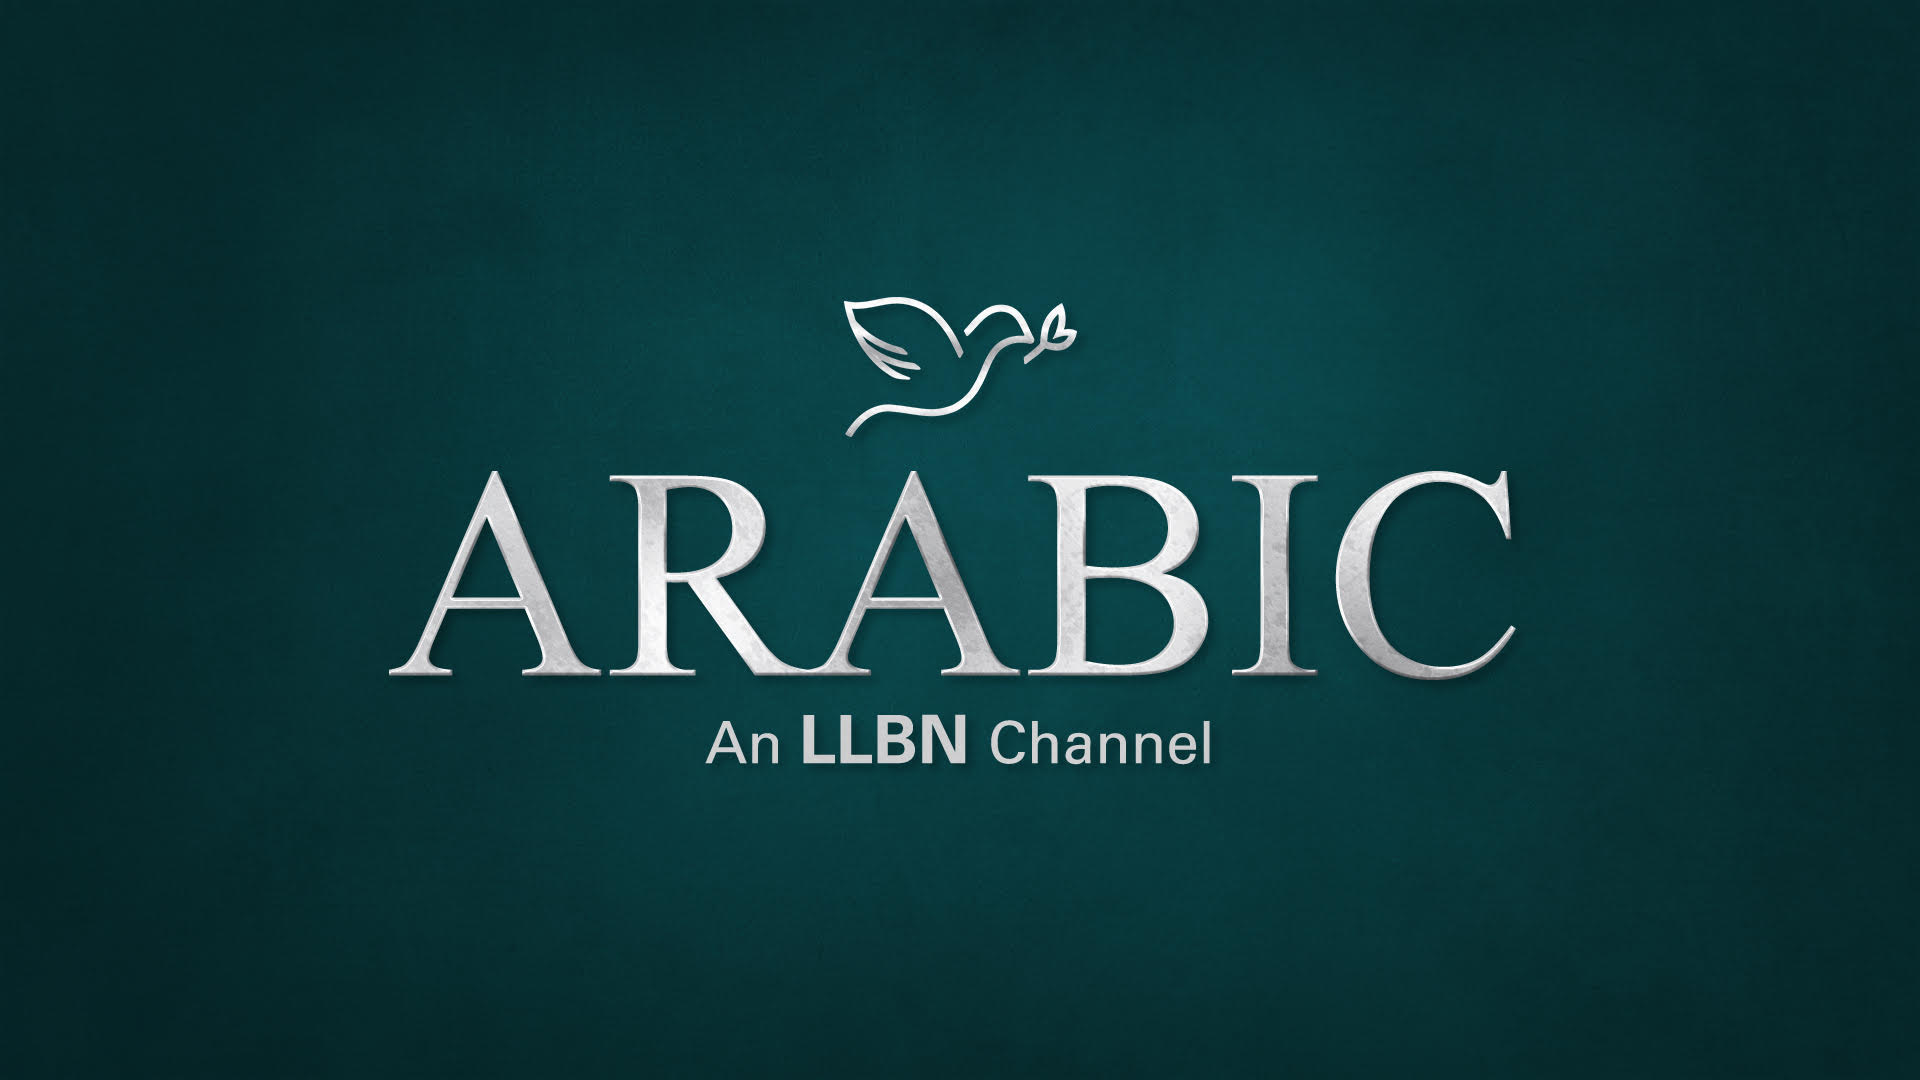 LLBN Arabic Christian TV